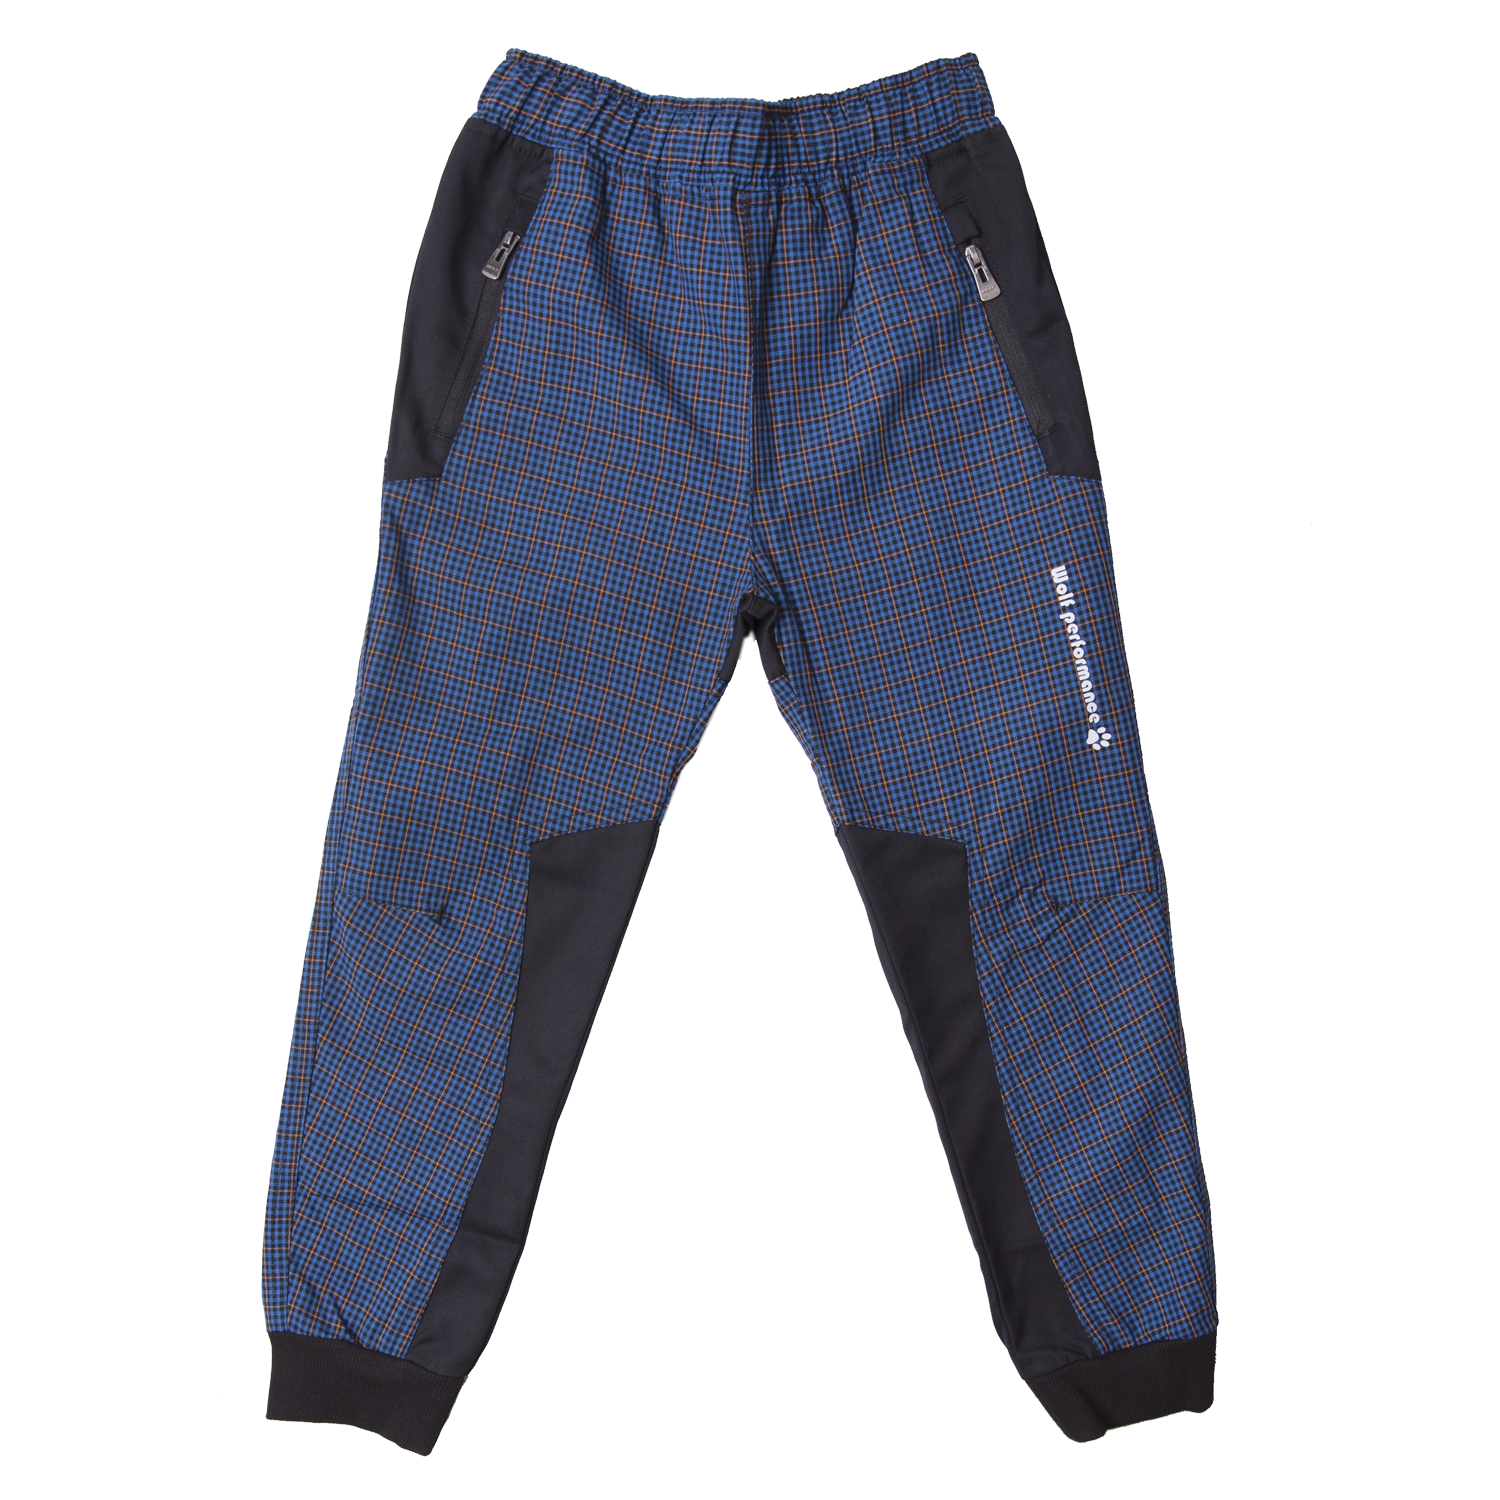 Chlapecké plátěné kalhoty - Wolf T2155, modrá Barva: Modrá, Velikost: 104